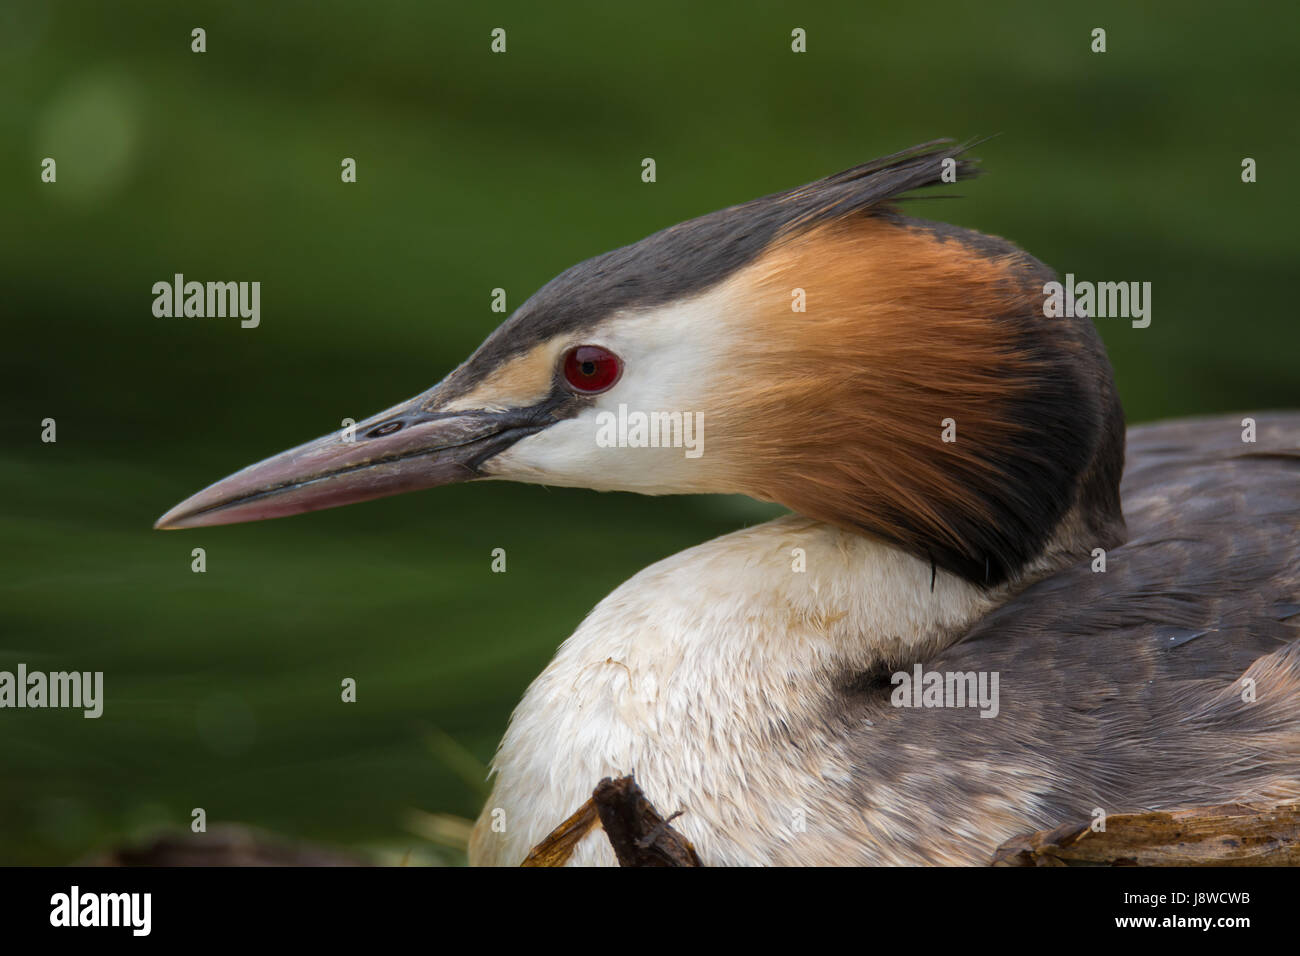 Grèbe huppé (Podiceps cristatus) portrait de profil. Oiseaux d'élégant dans la famille Podicipedidae nichant sur lac à la baie de Cardiff, Pays de Galles, Royaume-Uni Banque D'Images